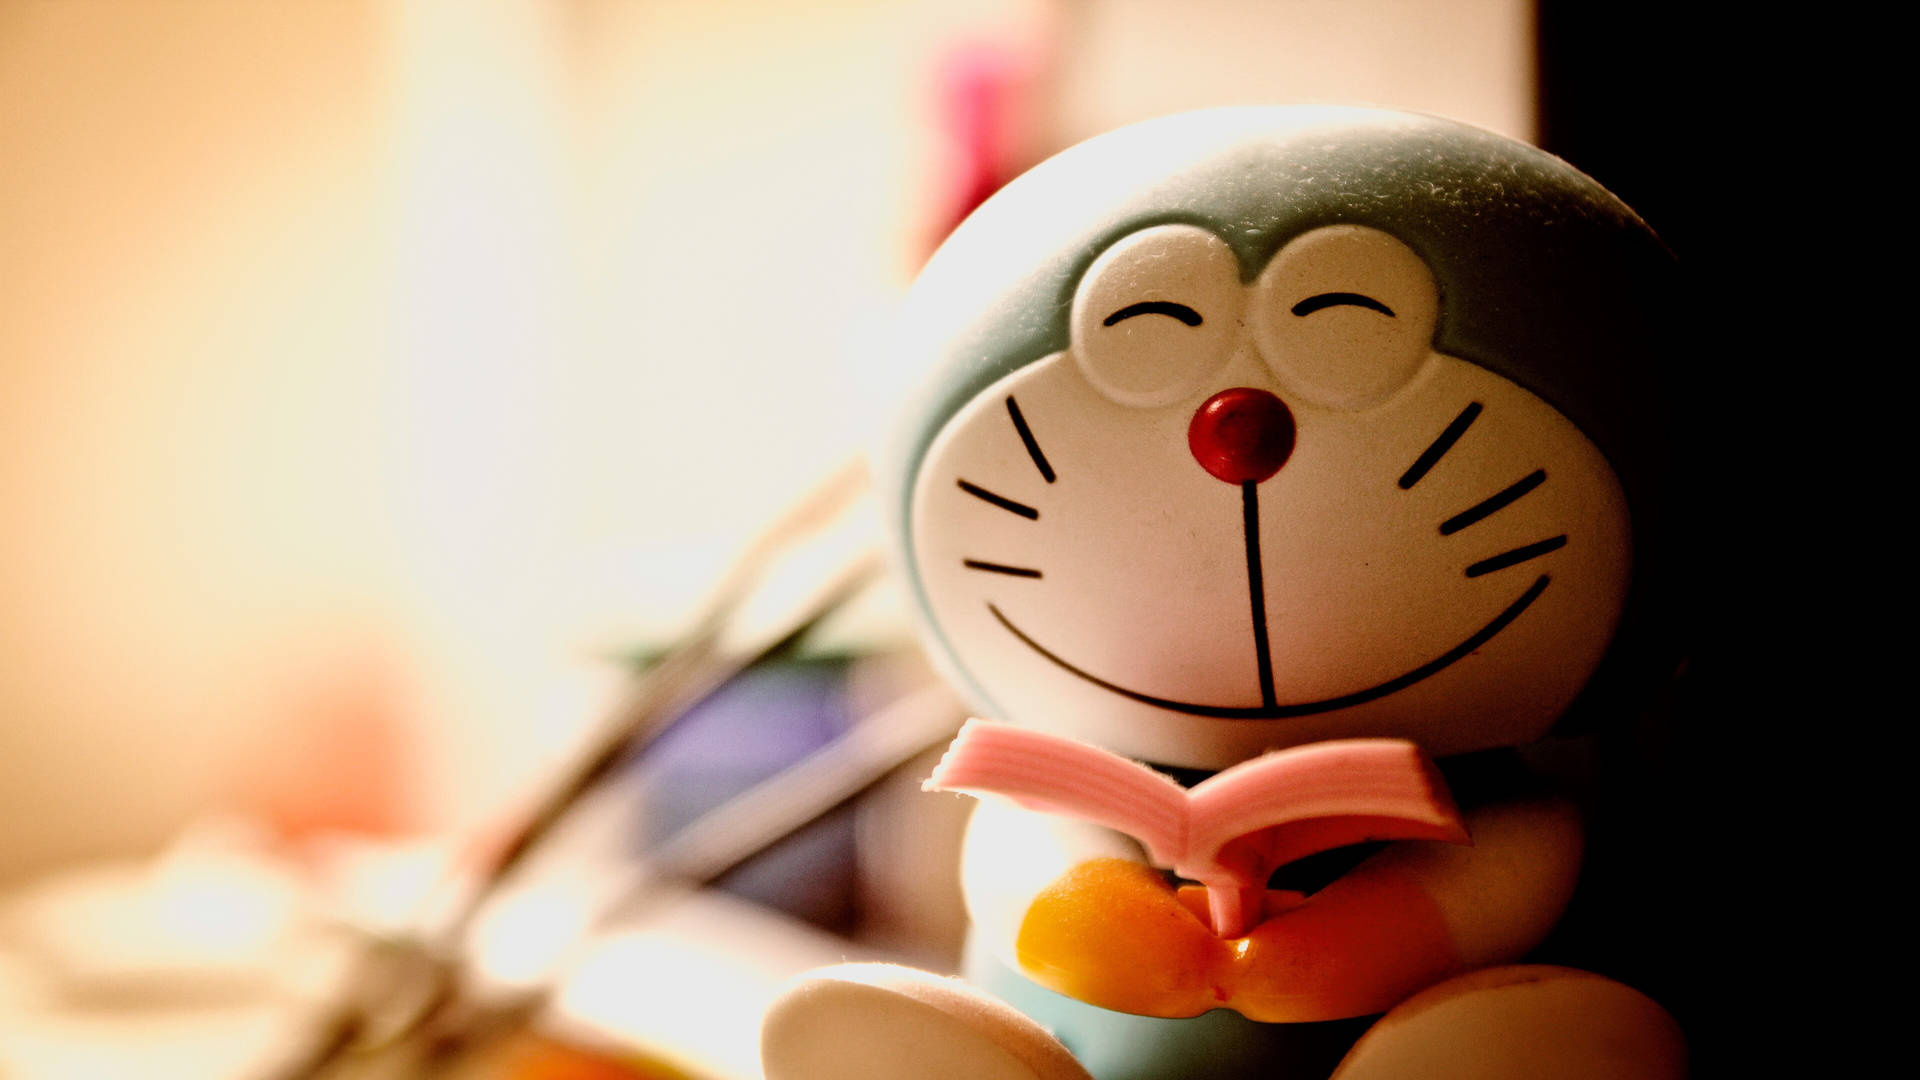 Smiling Doraemon 4k